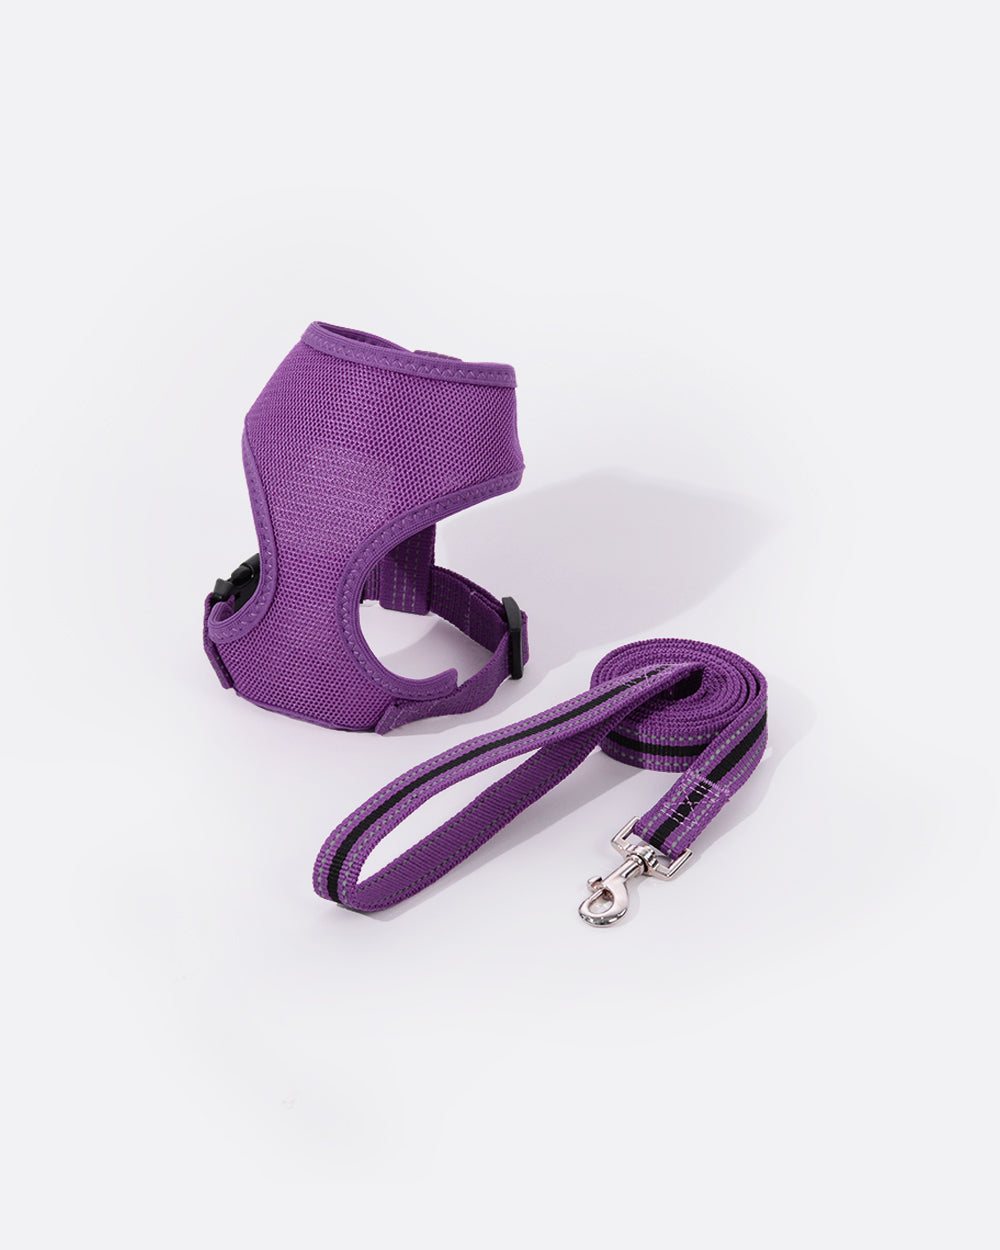 空氣感透氣寵物胸背帶連牽繩組合 - 亮紫羅蘭色